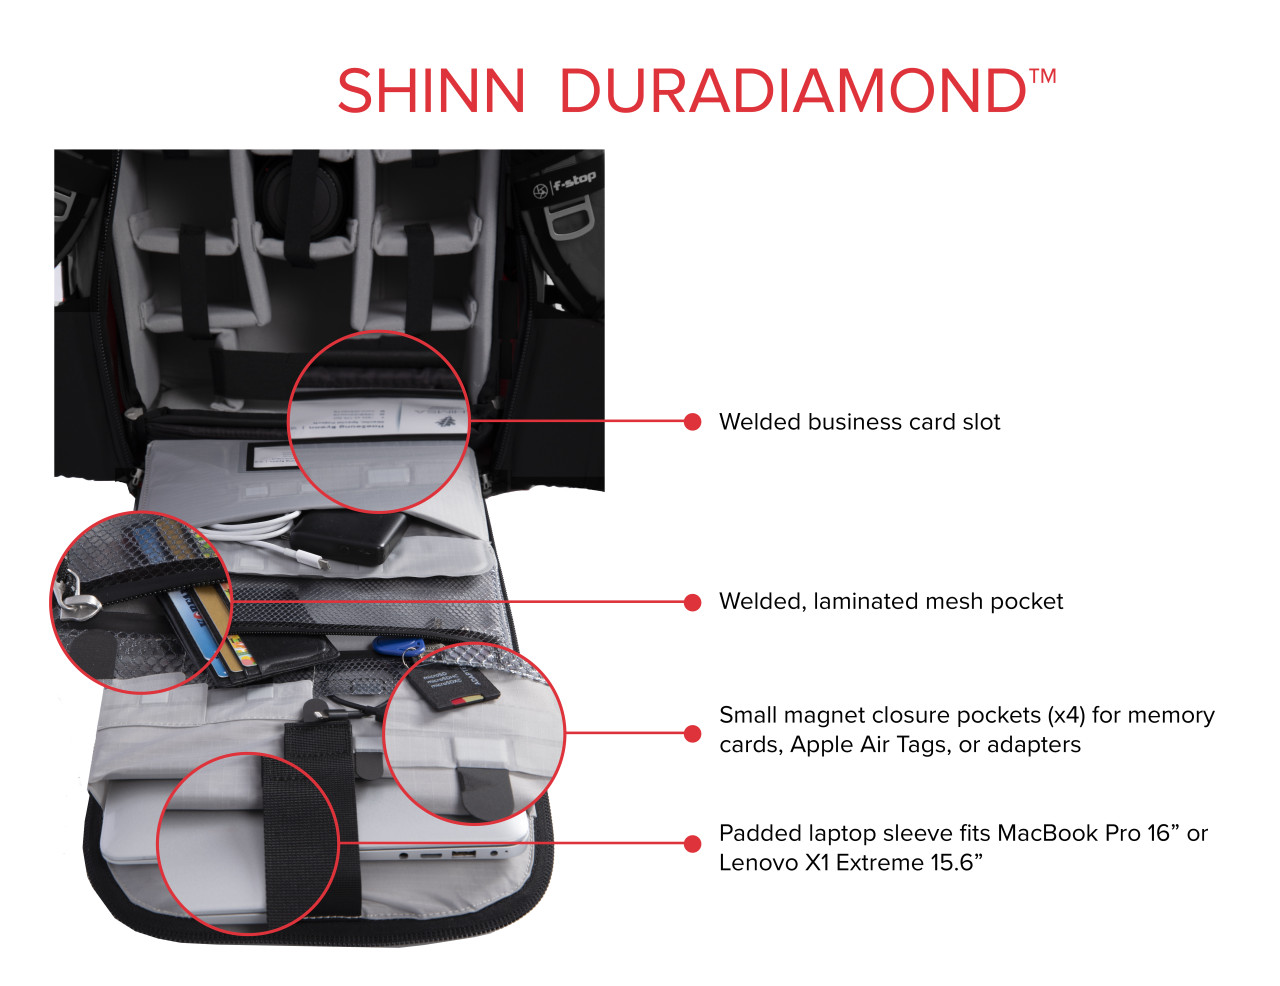 Plecak F-Stop Shinn DuraDiamond 80l zestaw (m146 + m275 + m923-69 + m815) antracyt - wybrane produkty do 30% taniej (cena zawiera rabat)